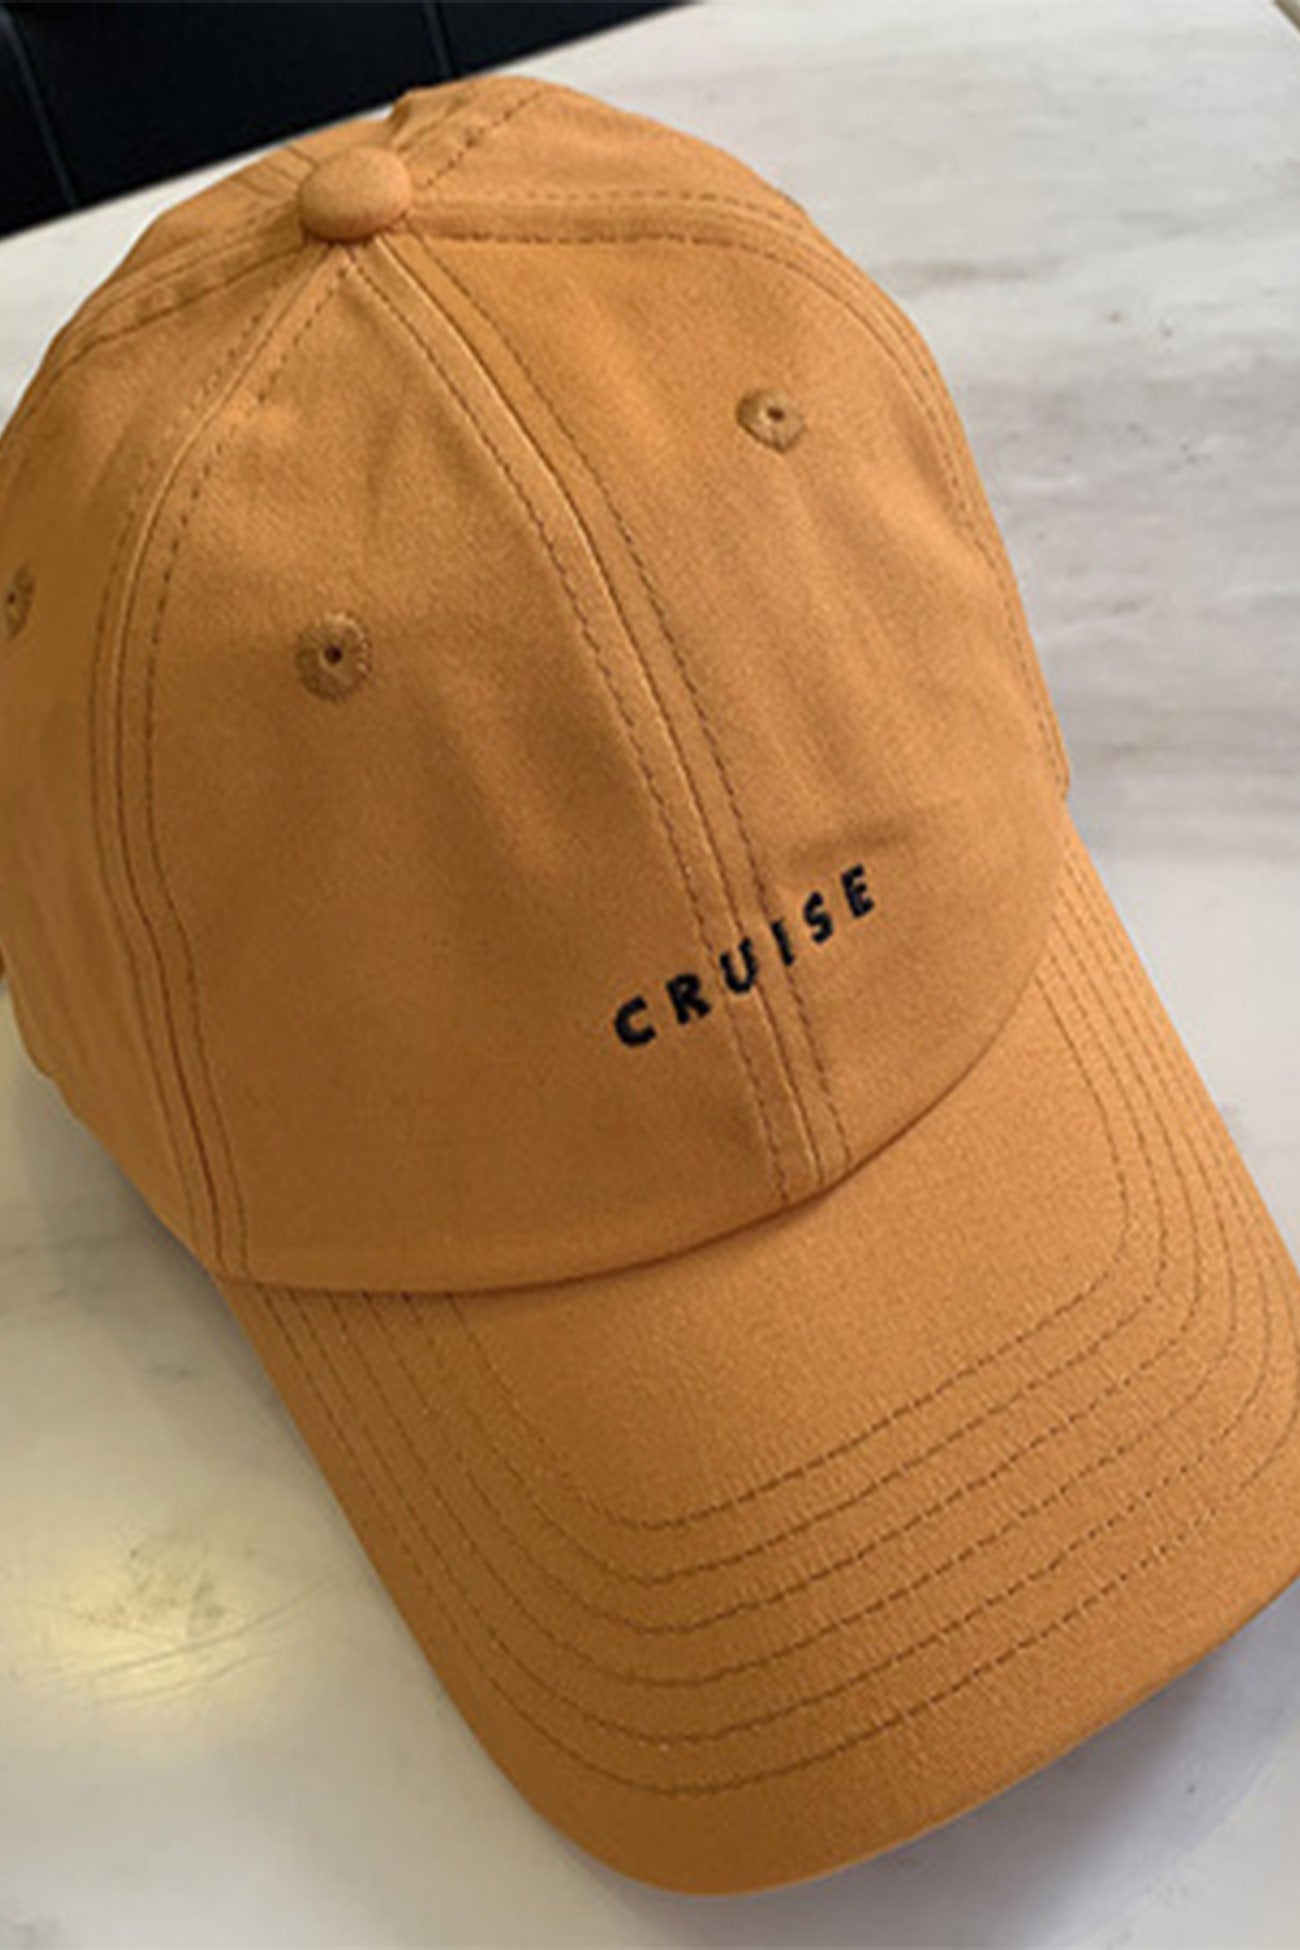 Cruise Baseball Cap Orange / One Size